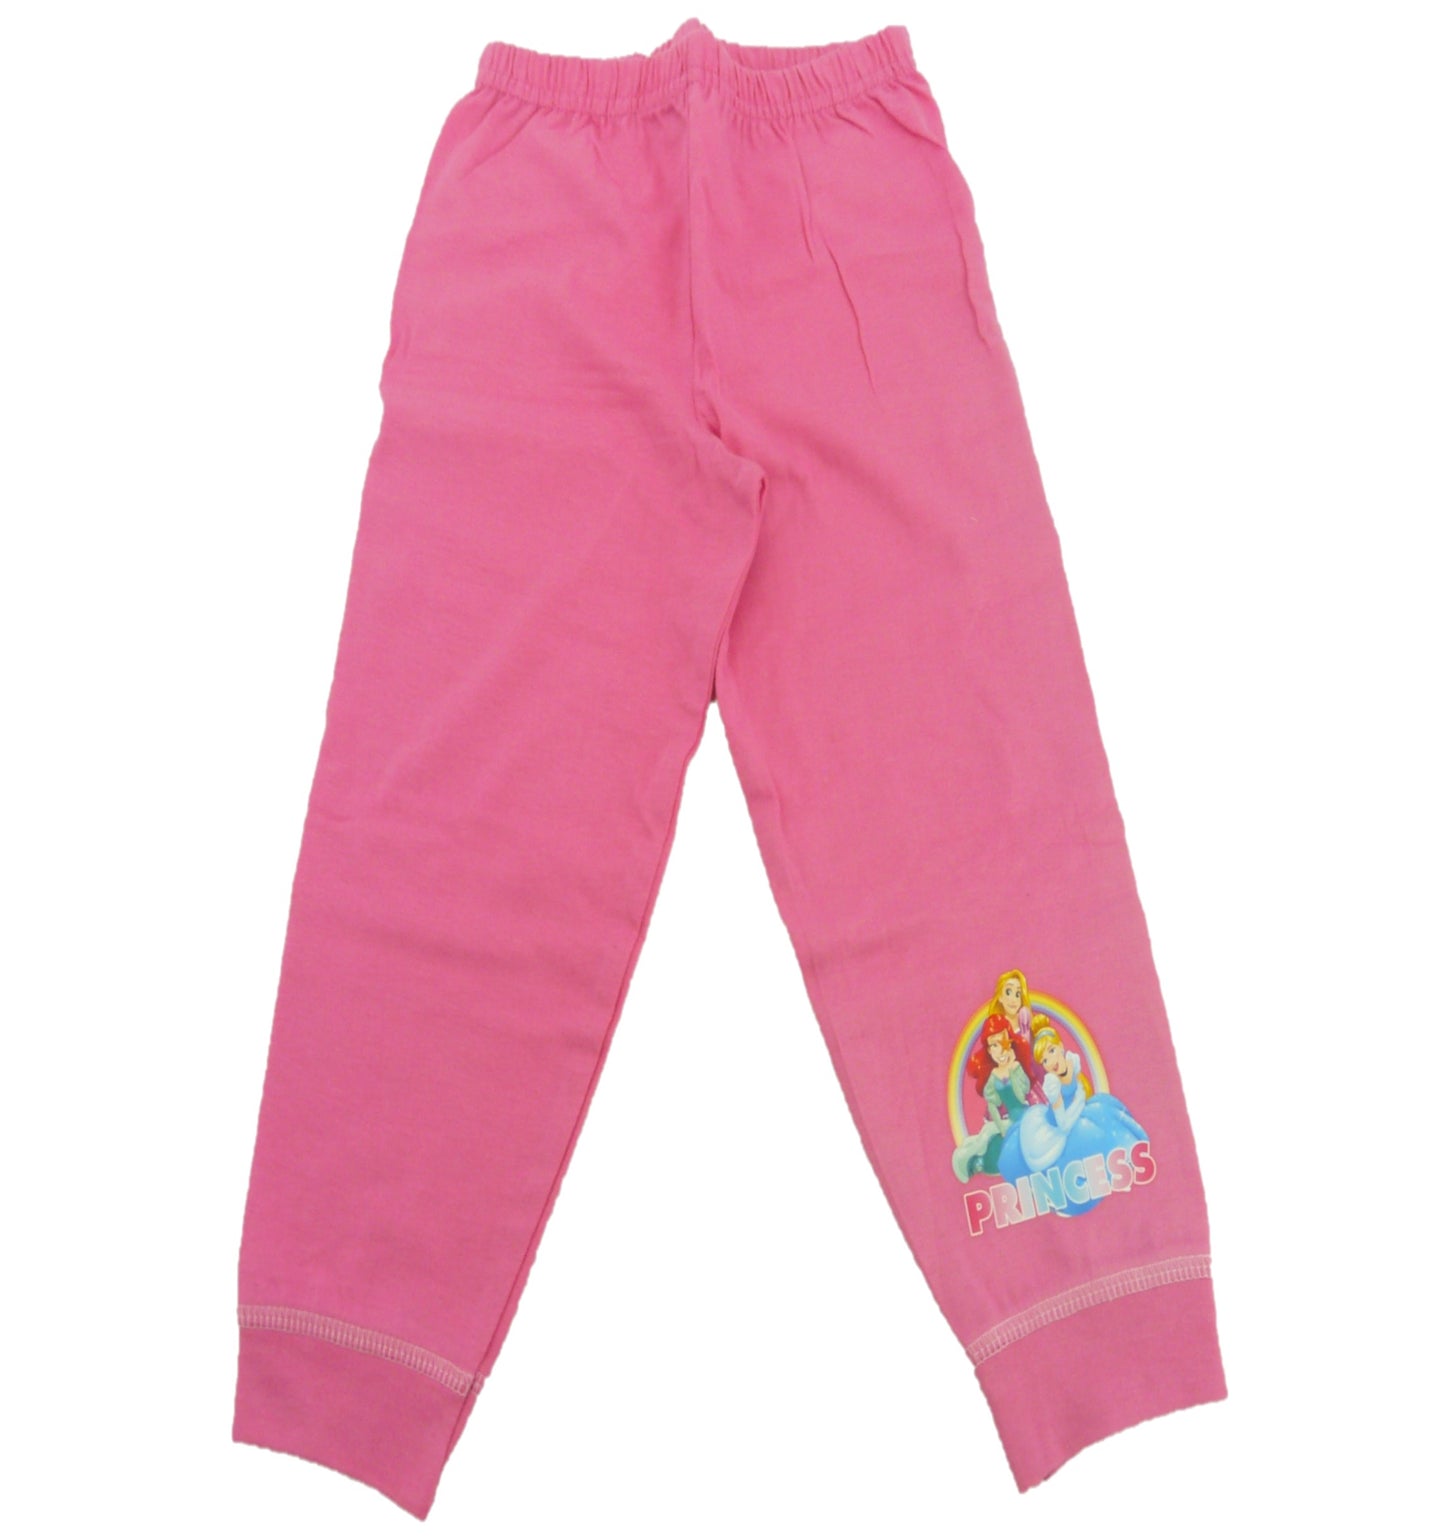 Disney Princess "Princess" Girl's Pink Pyjamas 18-24 Months